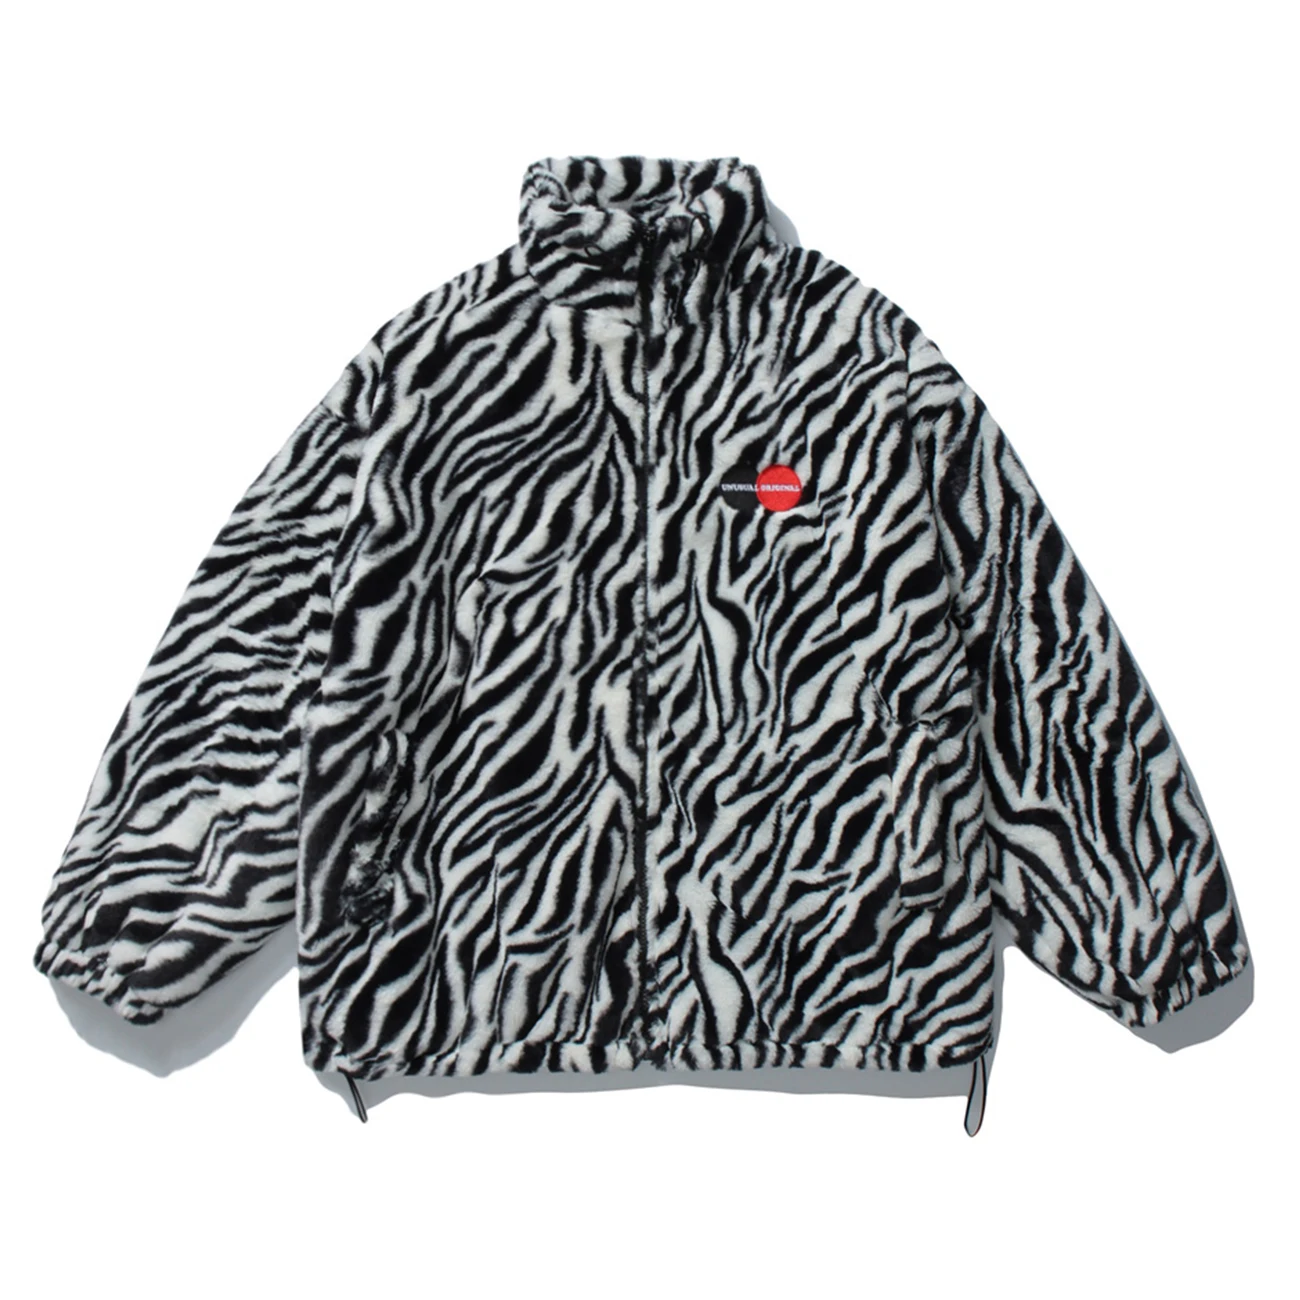 LACIBLE Hip Hop Parka Jacket Men Streetwear Retro Zebra Pattern Lambswool Jacket Coats 2020 Winter Harajuku Jacket Warm Outwear